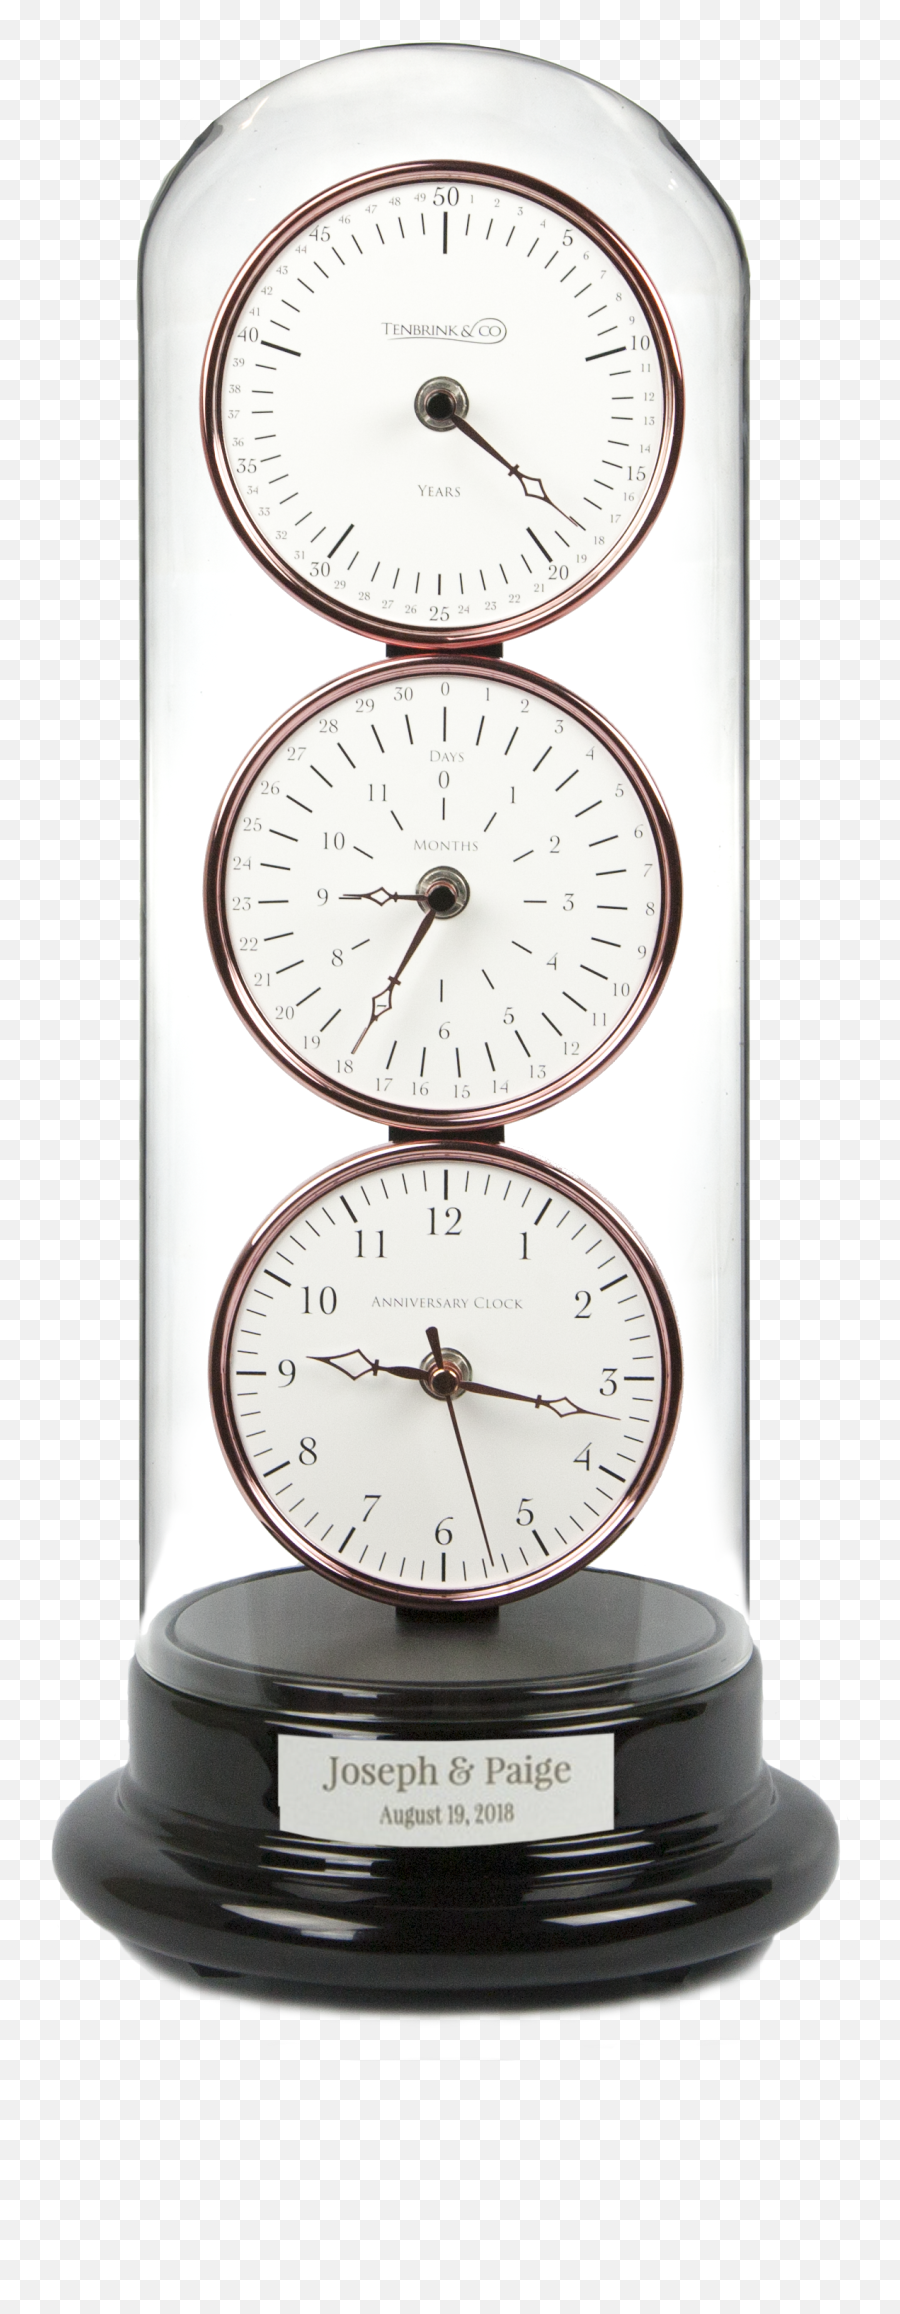 Anniversary Clock Builder Tenbrink U0026 Company - Quartz Clock Png,Clock Transparent